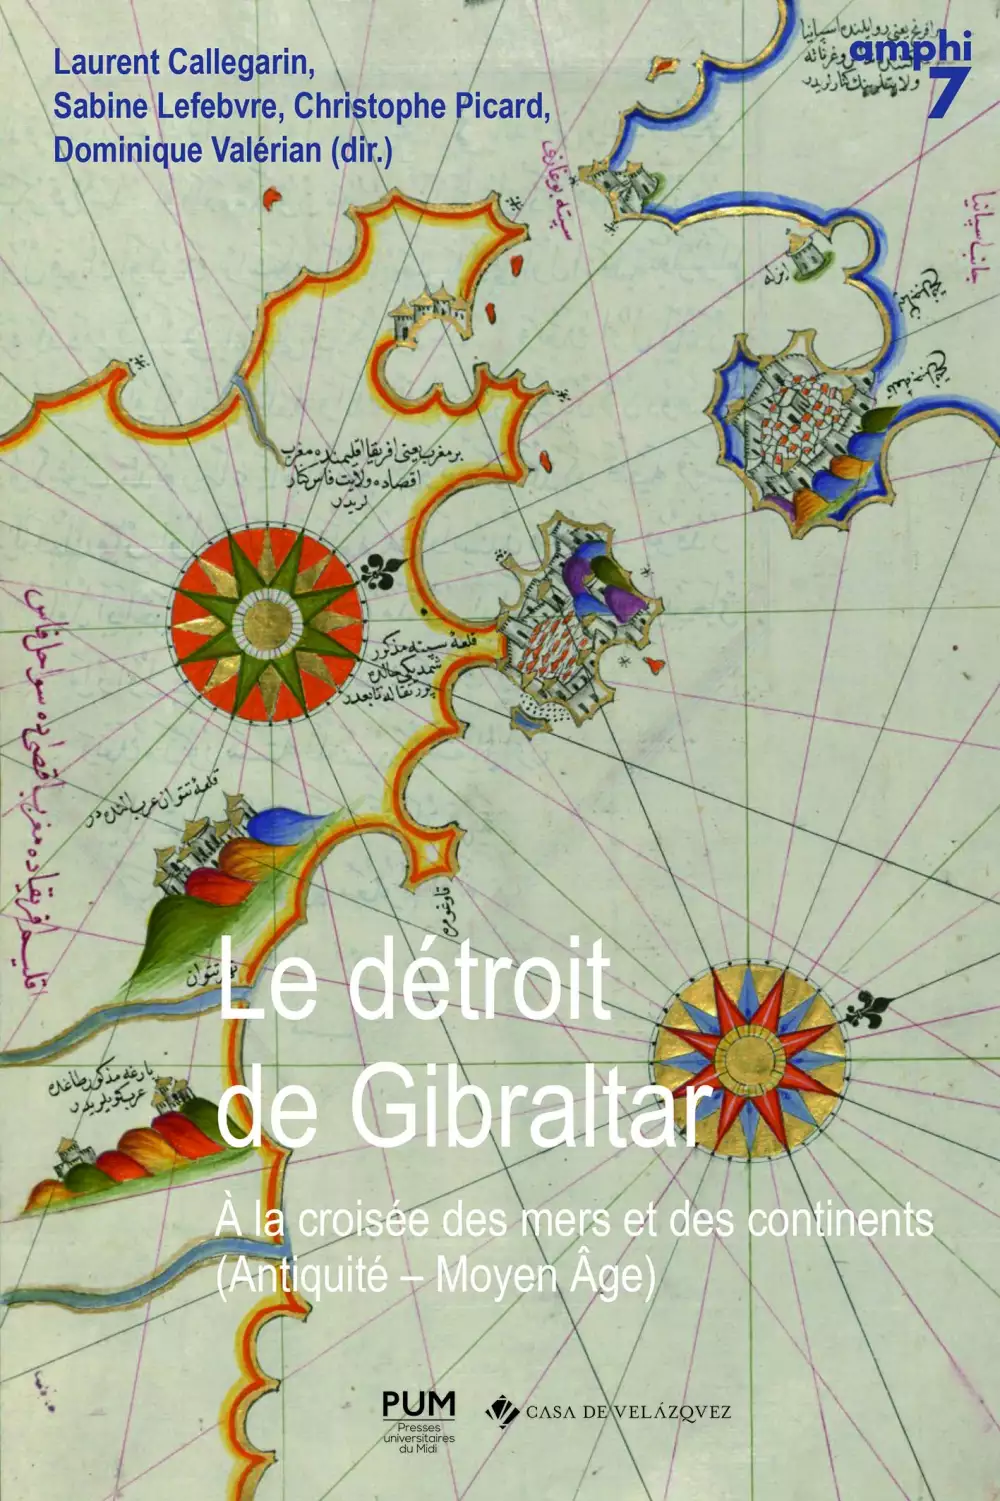 Couv Detroit Gibraltar SED90 CMJN.jpg